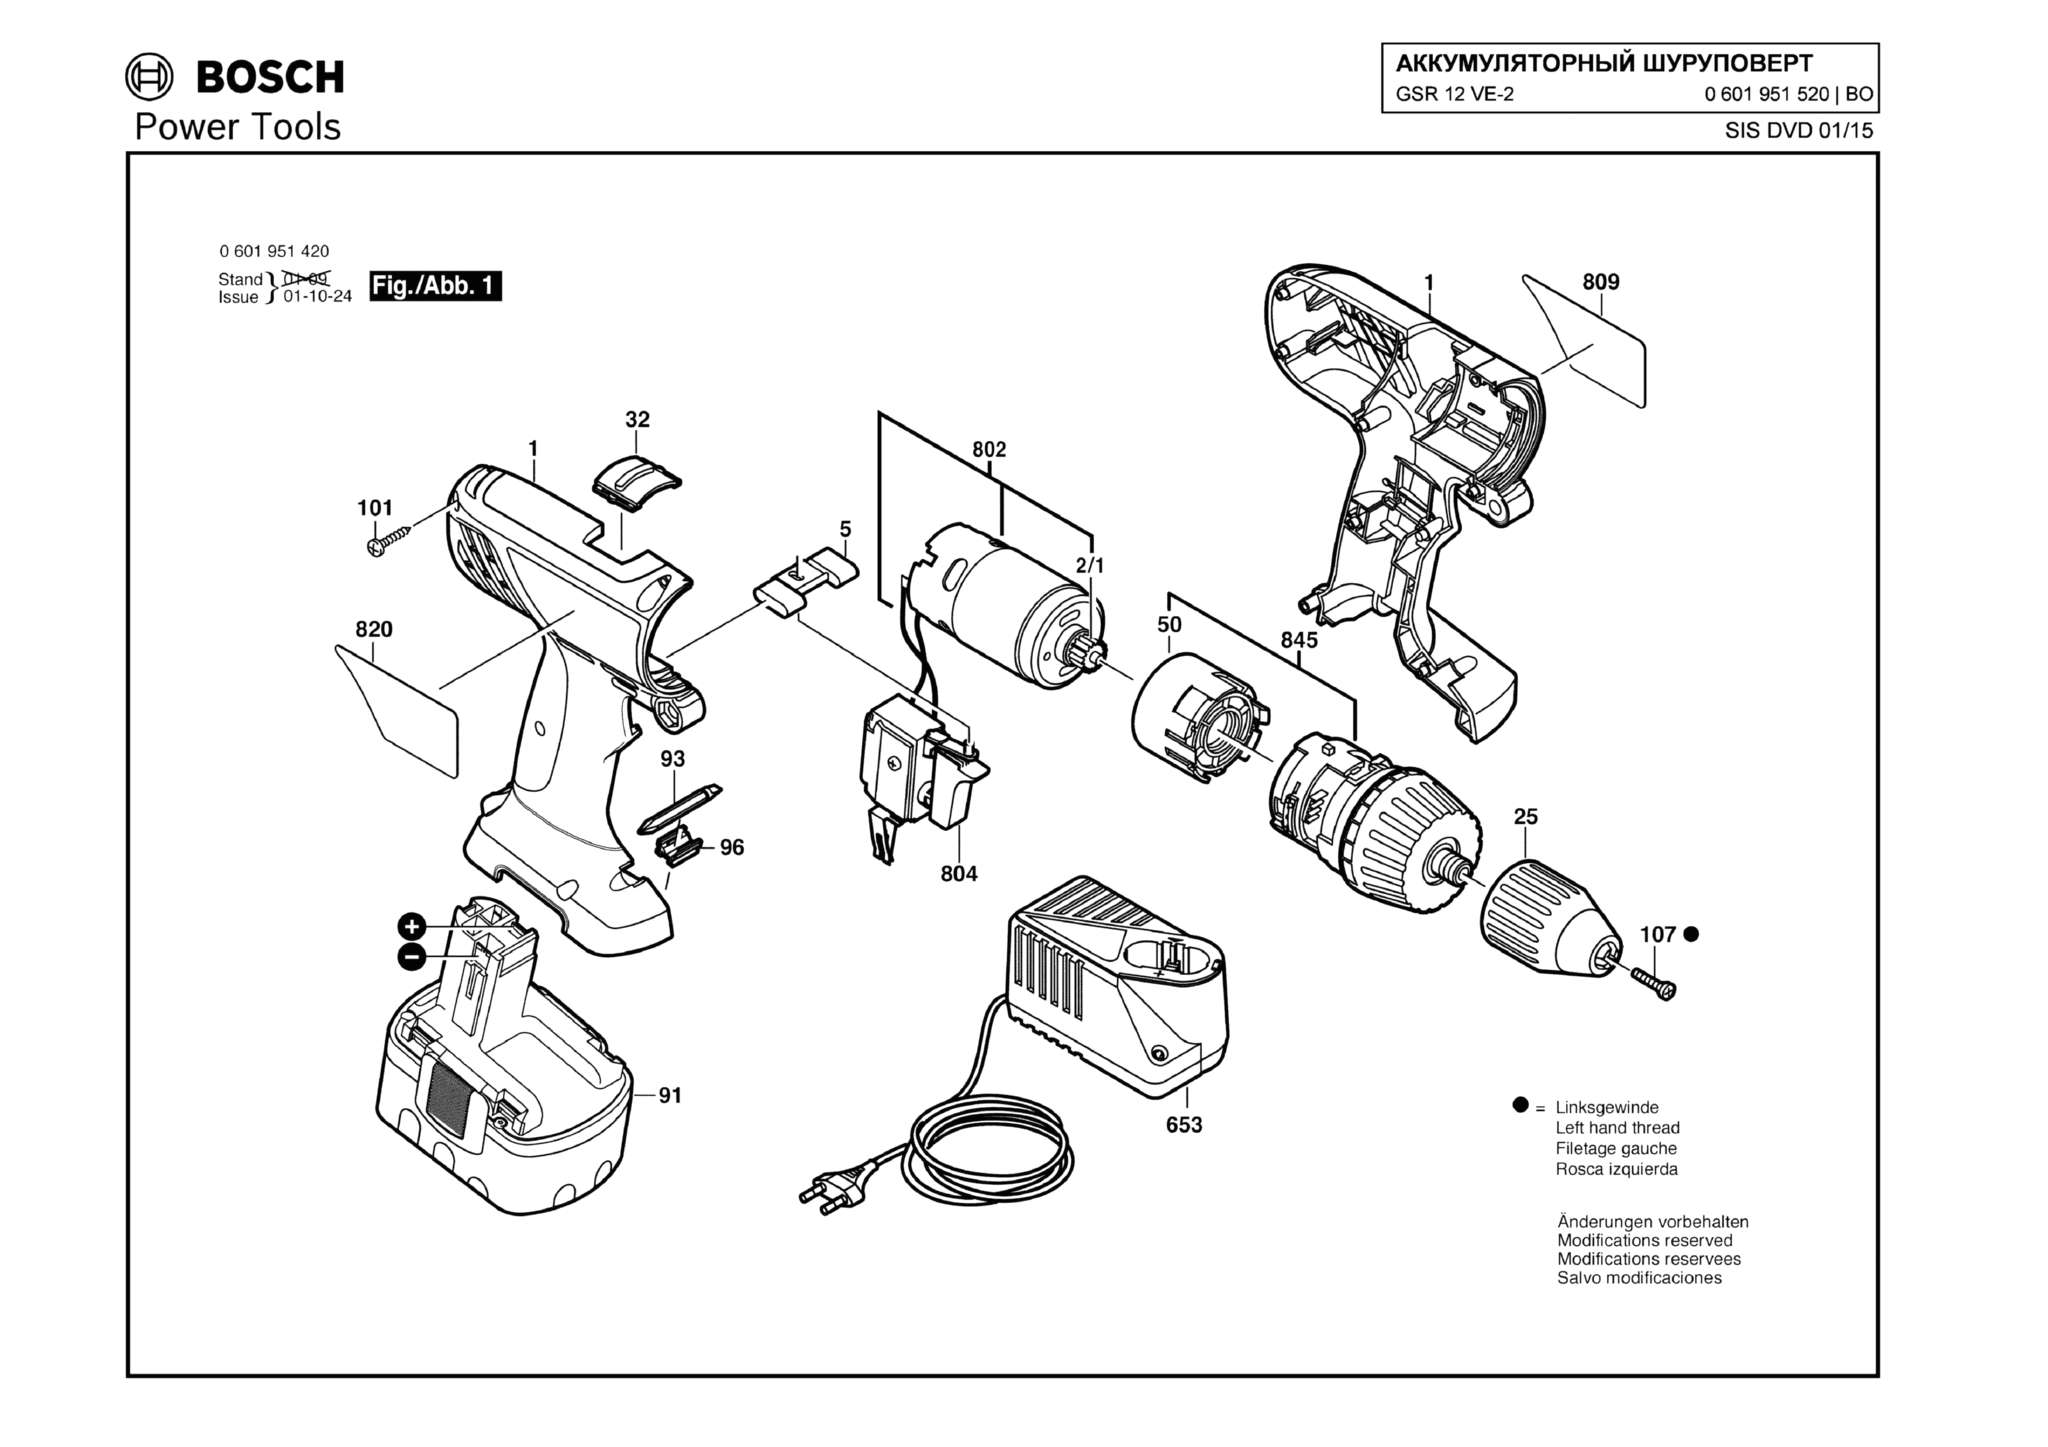 Запчасти, схема и деталировка Bosch GSR 12 VE-2 (ТИП 0601951520)